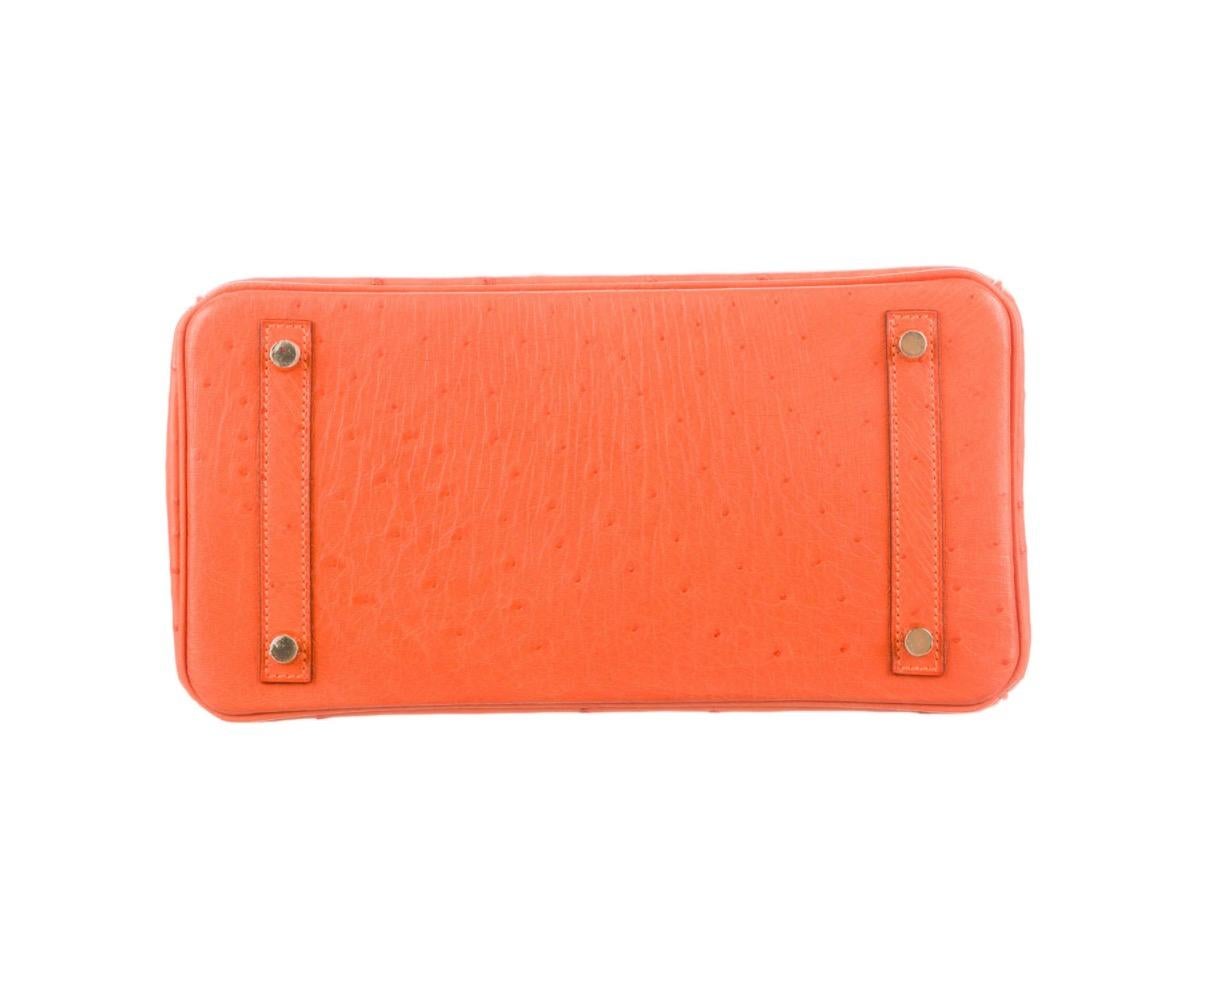 Women's Hermes NEW Birkin 30 Orange Exotic Gold Top Handle Satchel Tote Bag in Box